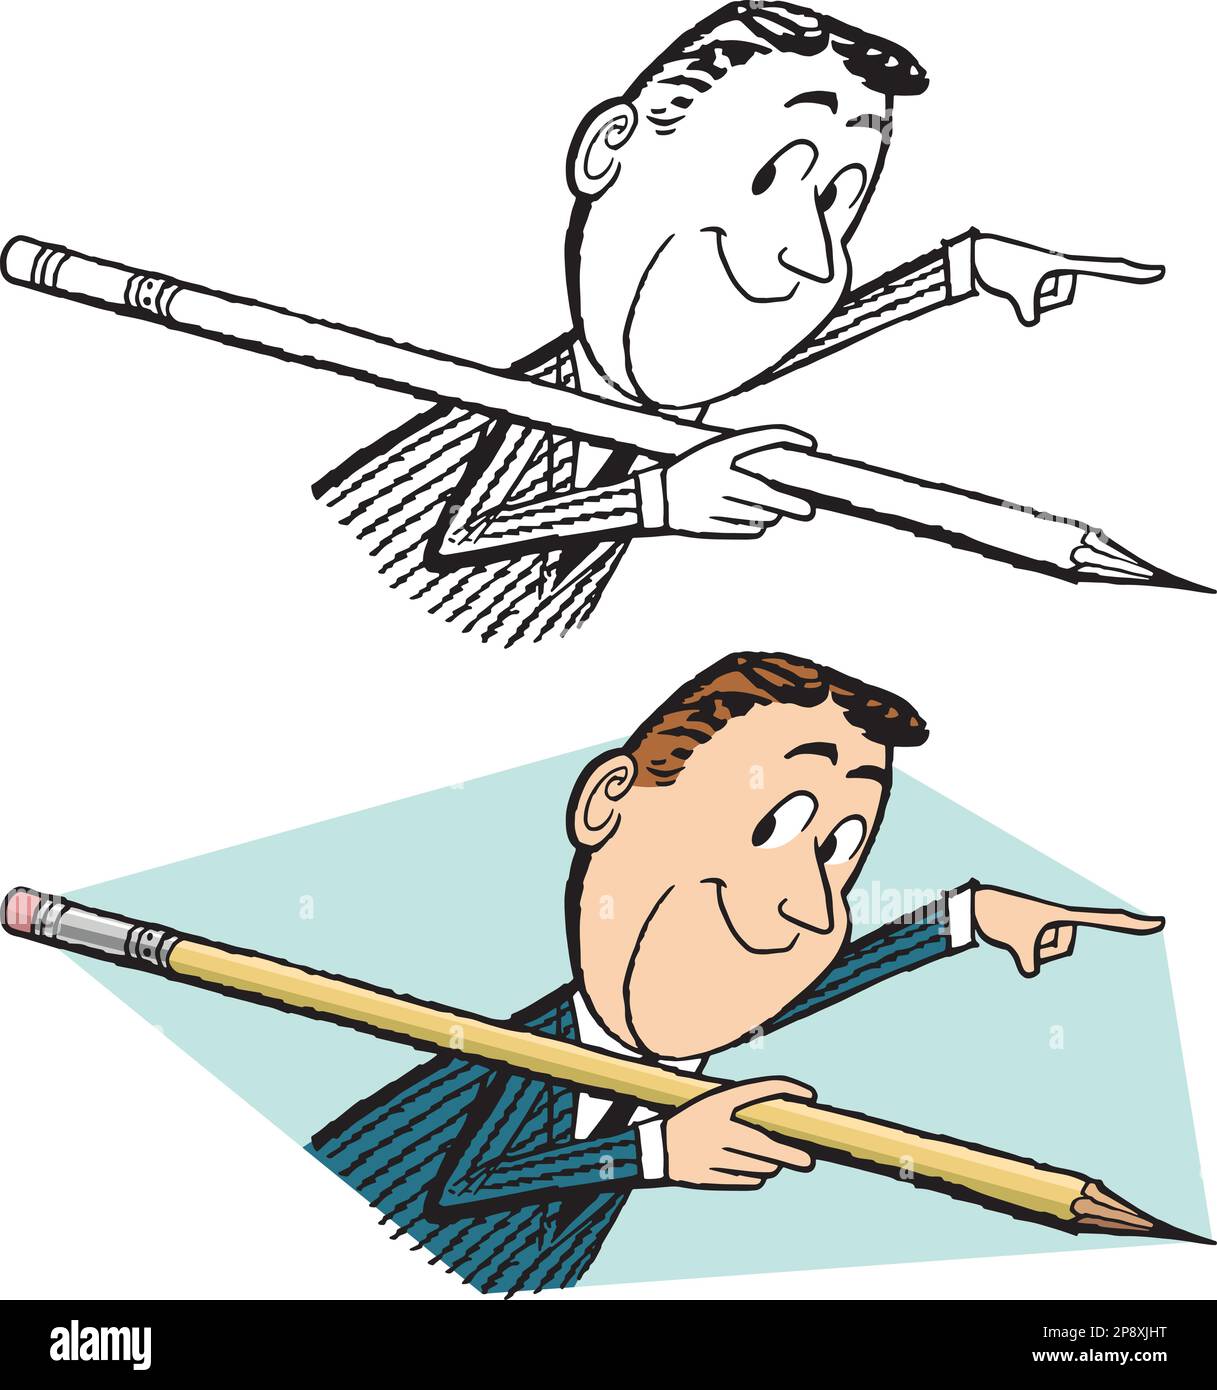 Un dessin animé rétro vintage d'un homme d'affaires tenant un gros crayon et pointant vers la droite. Illustration de Vecteur